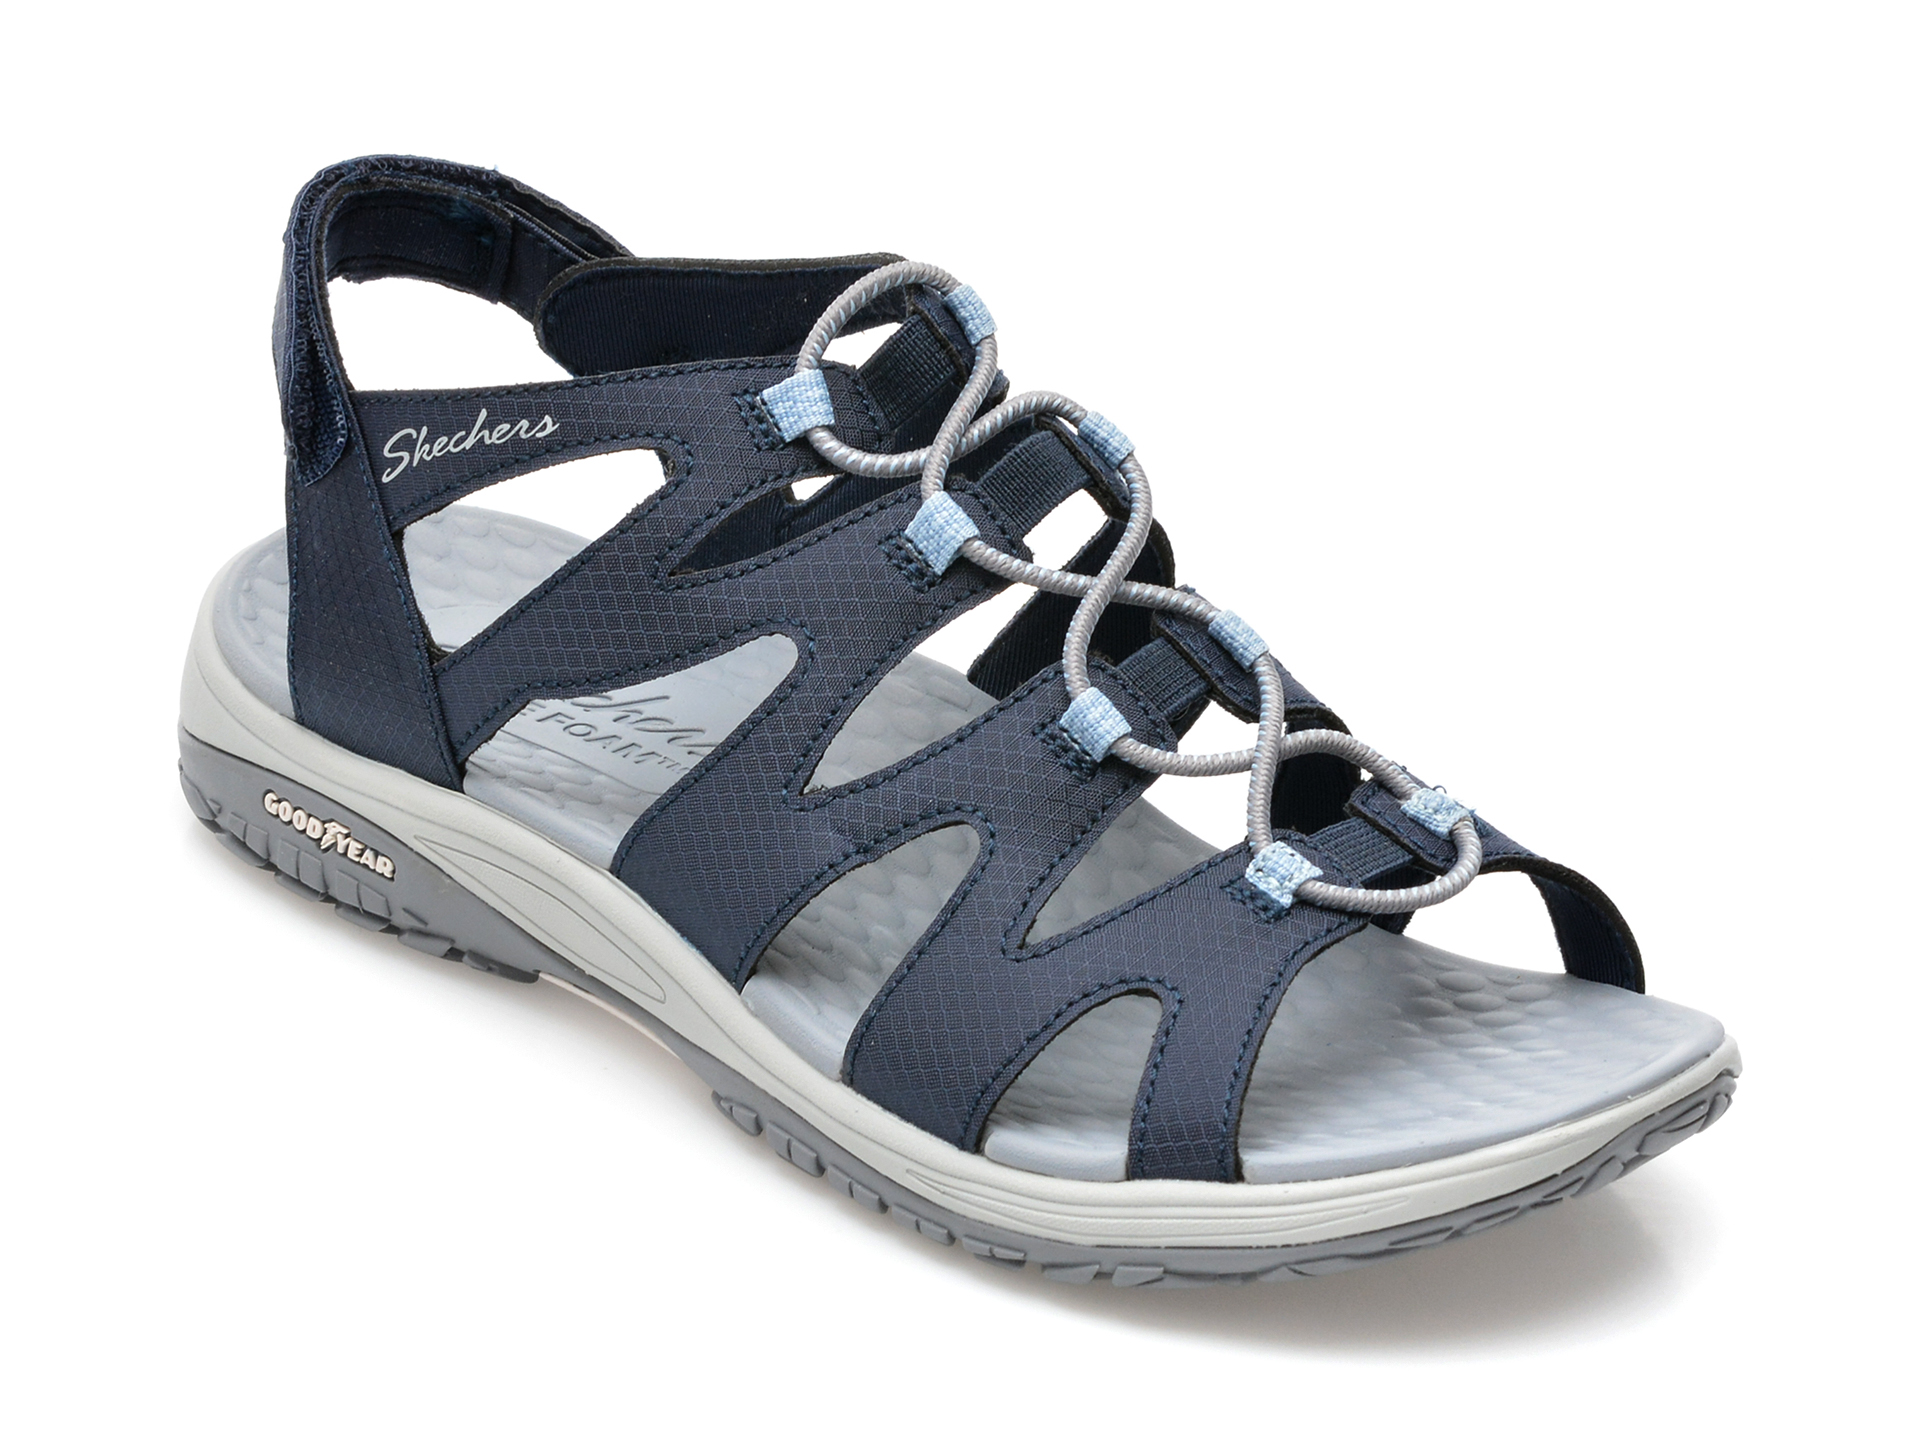 Sandale SKECHERS bleumarin, LOMELL, din material textil imagine reduceri black friday 2021 /femei/sandale